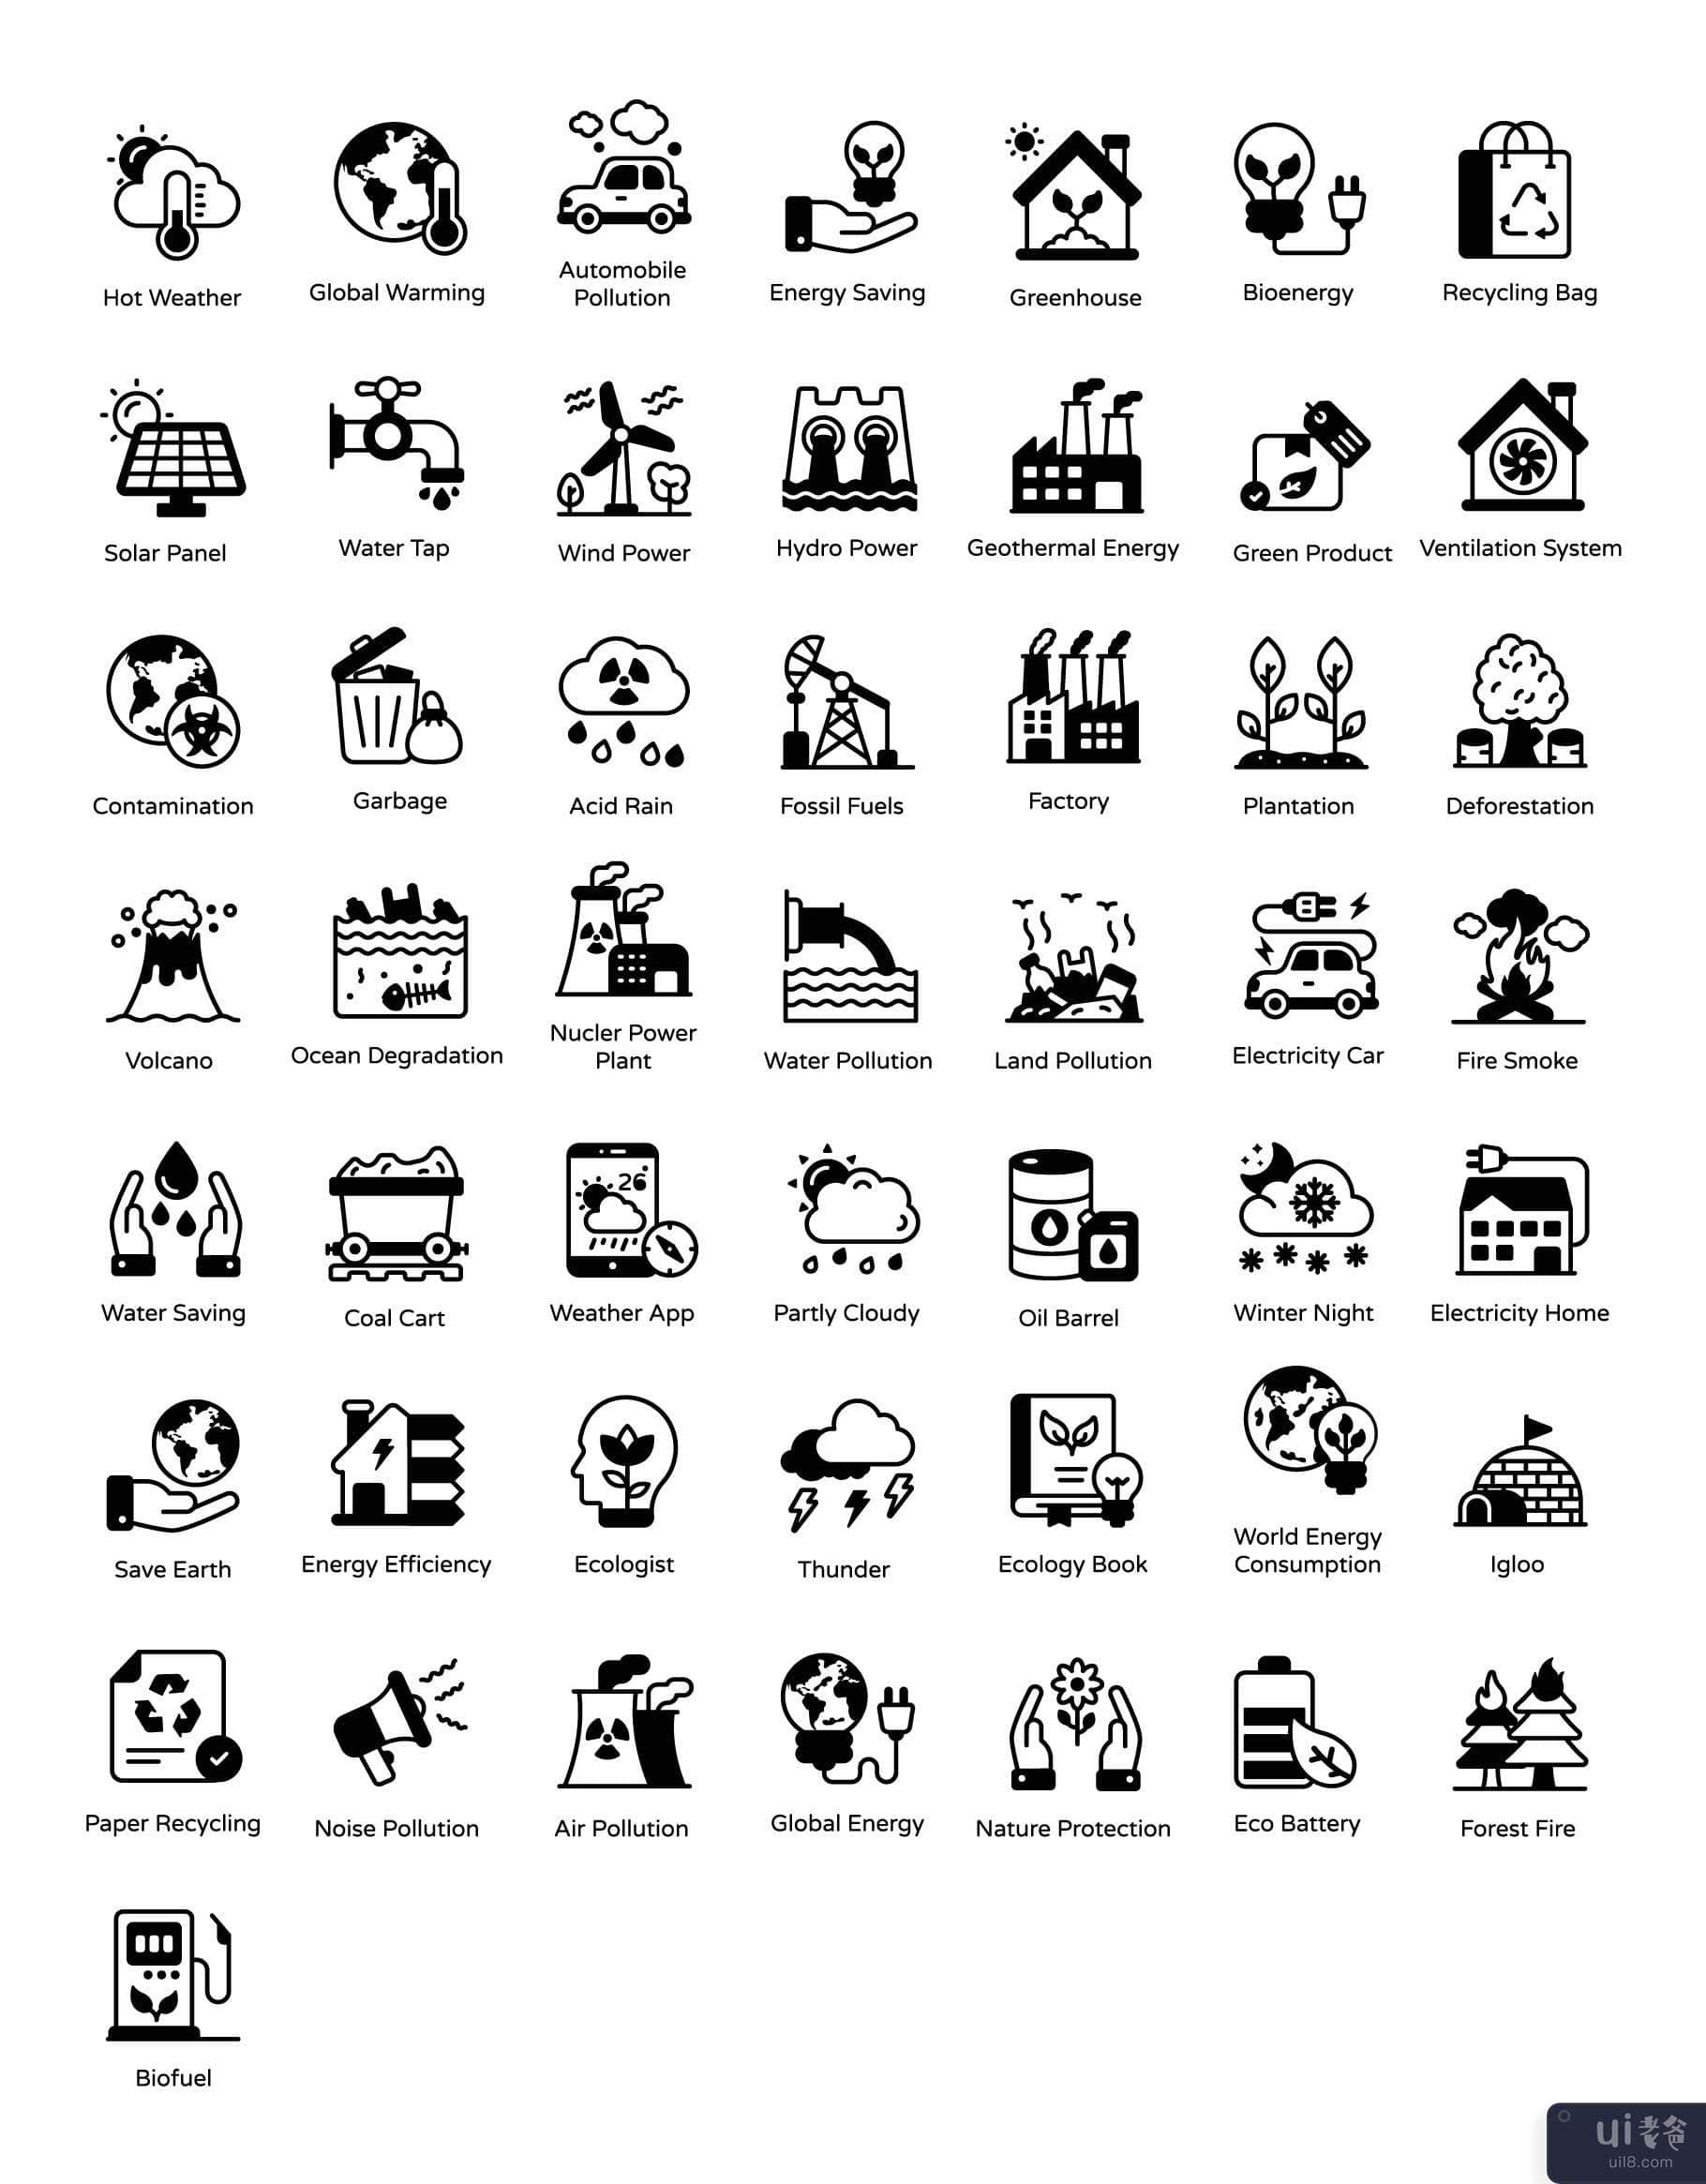 全球变暖字形图标(Global Warming Glyph Icons)插图